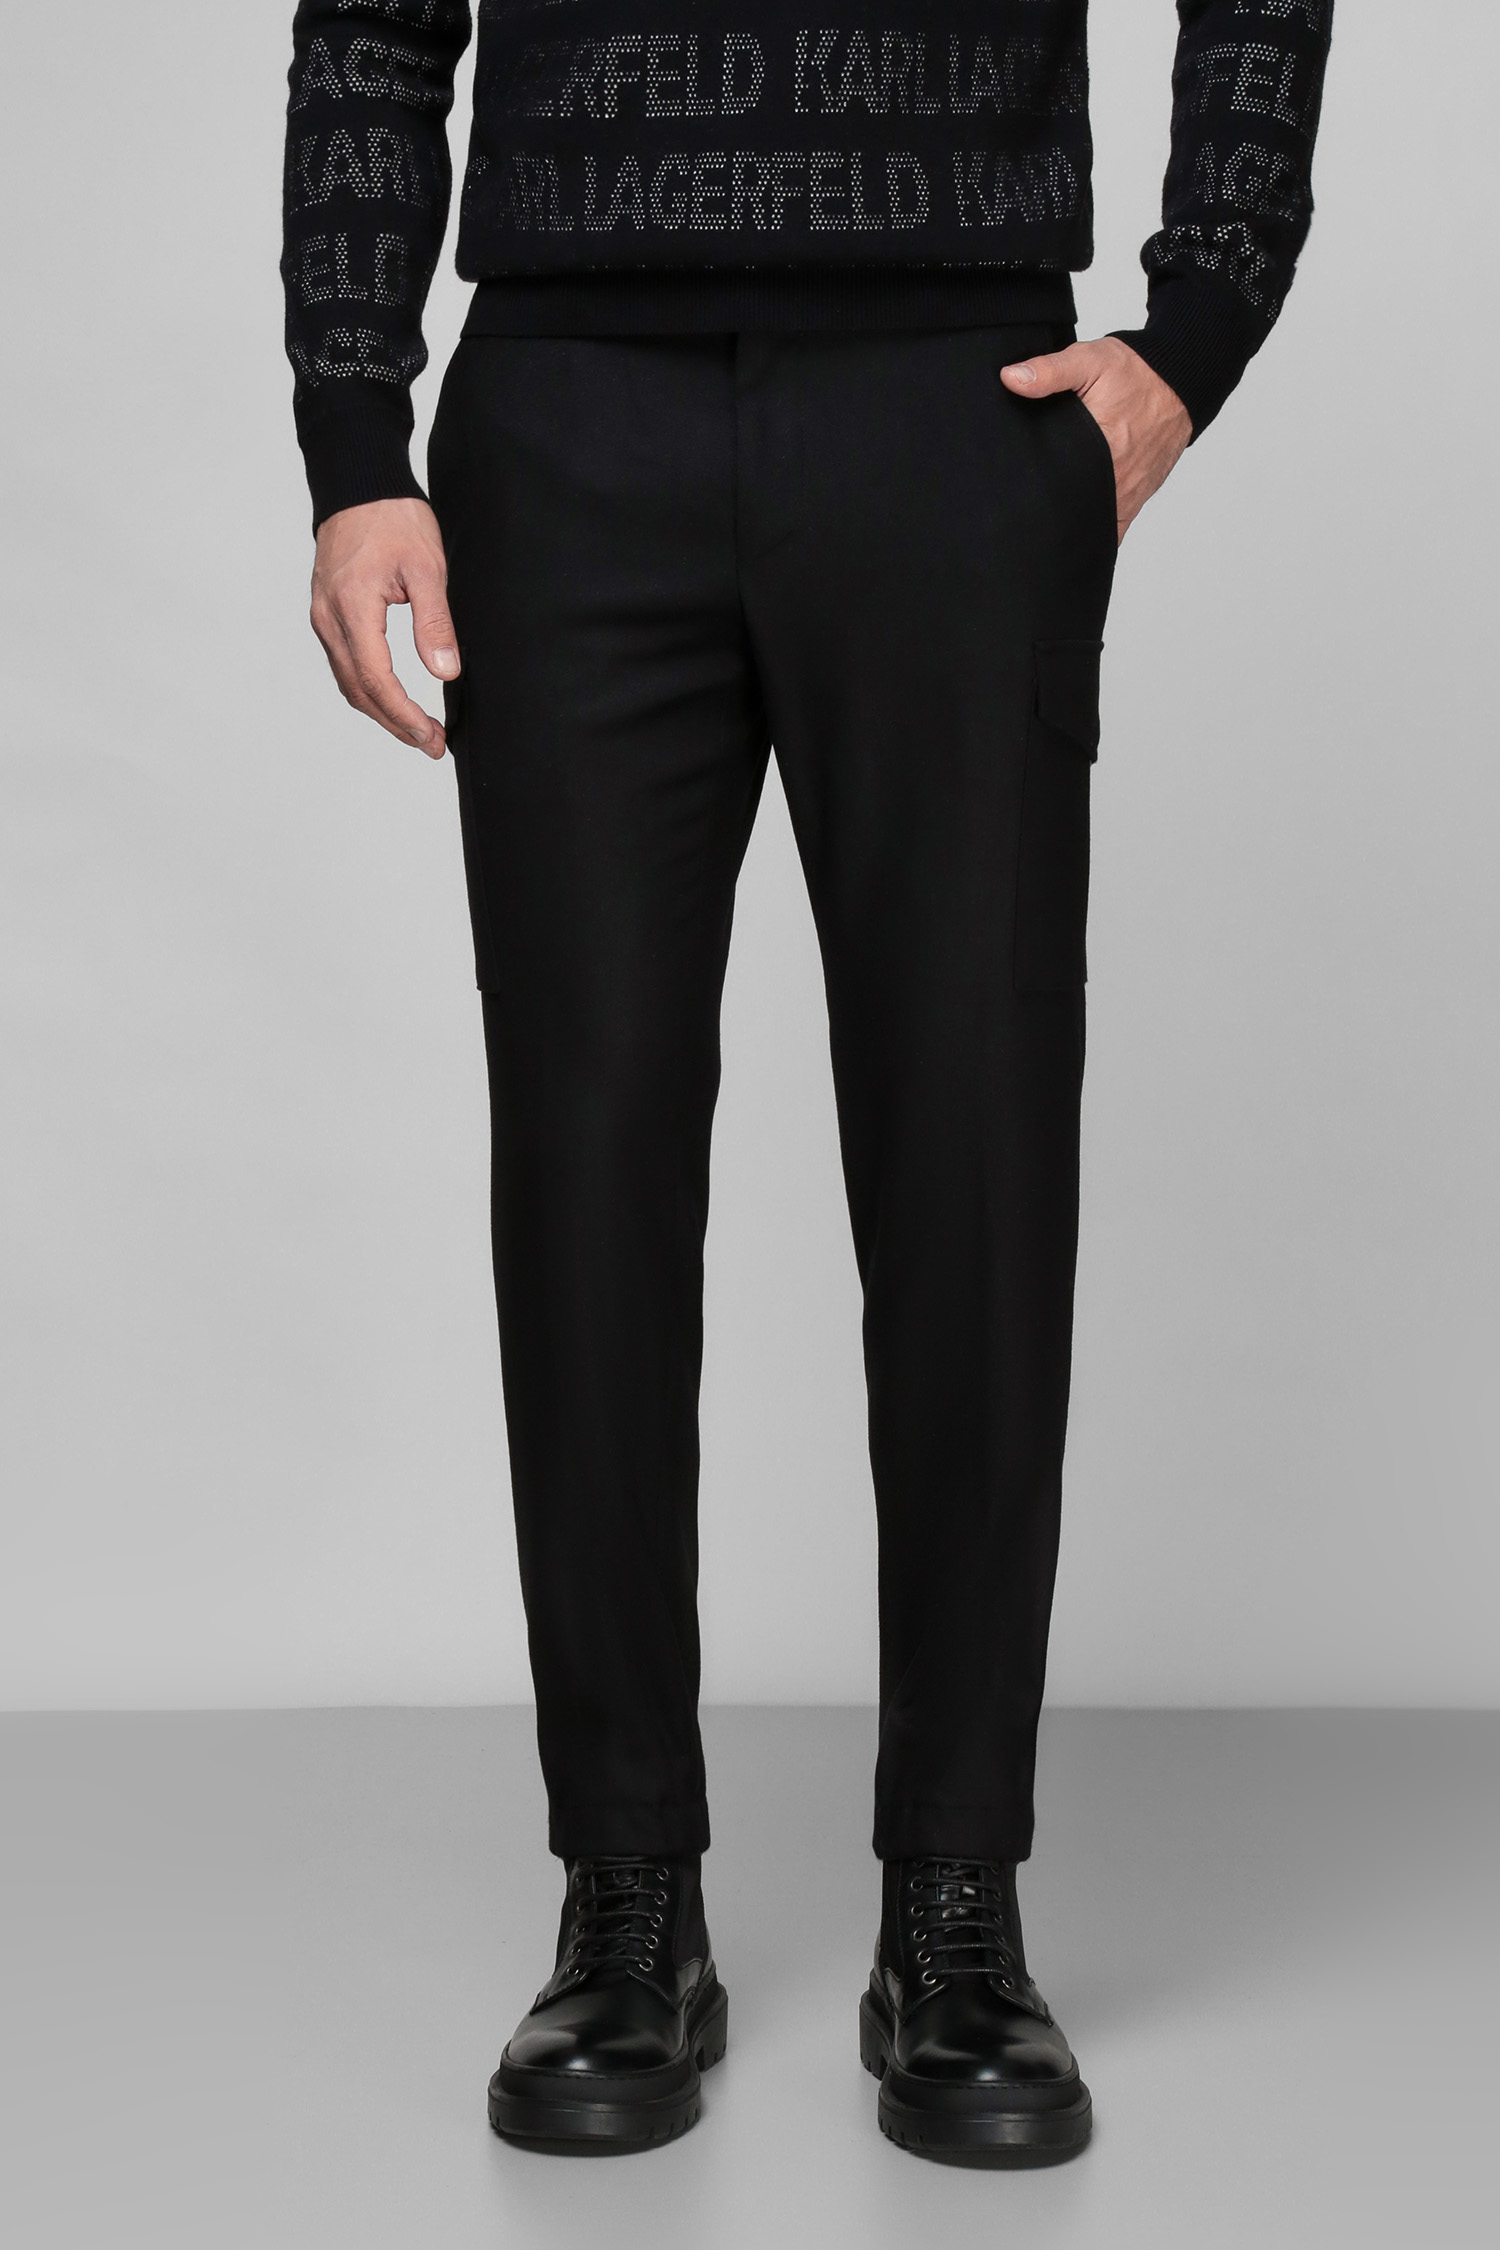 Мужские черные шерстяные брюки Karl Lagerfeld 512022.255038;990